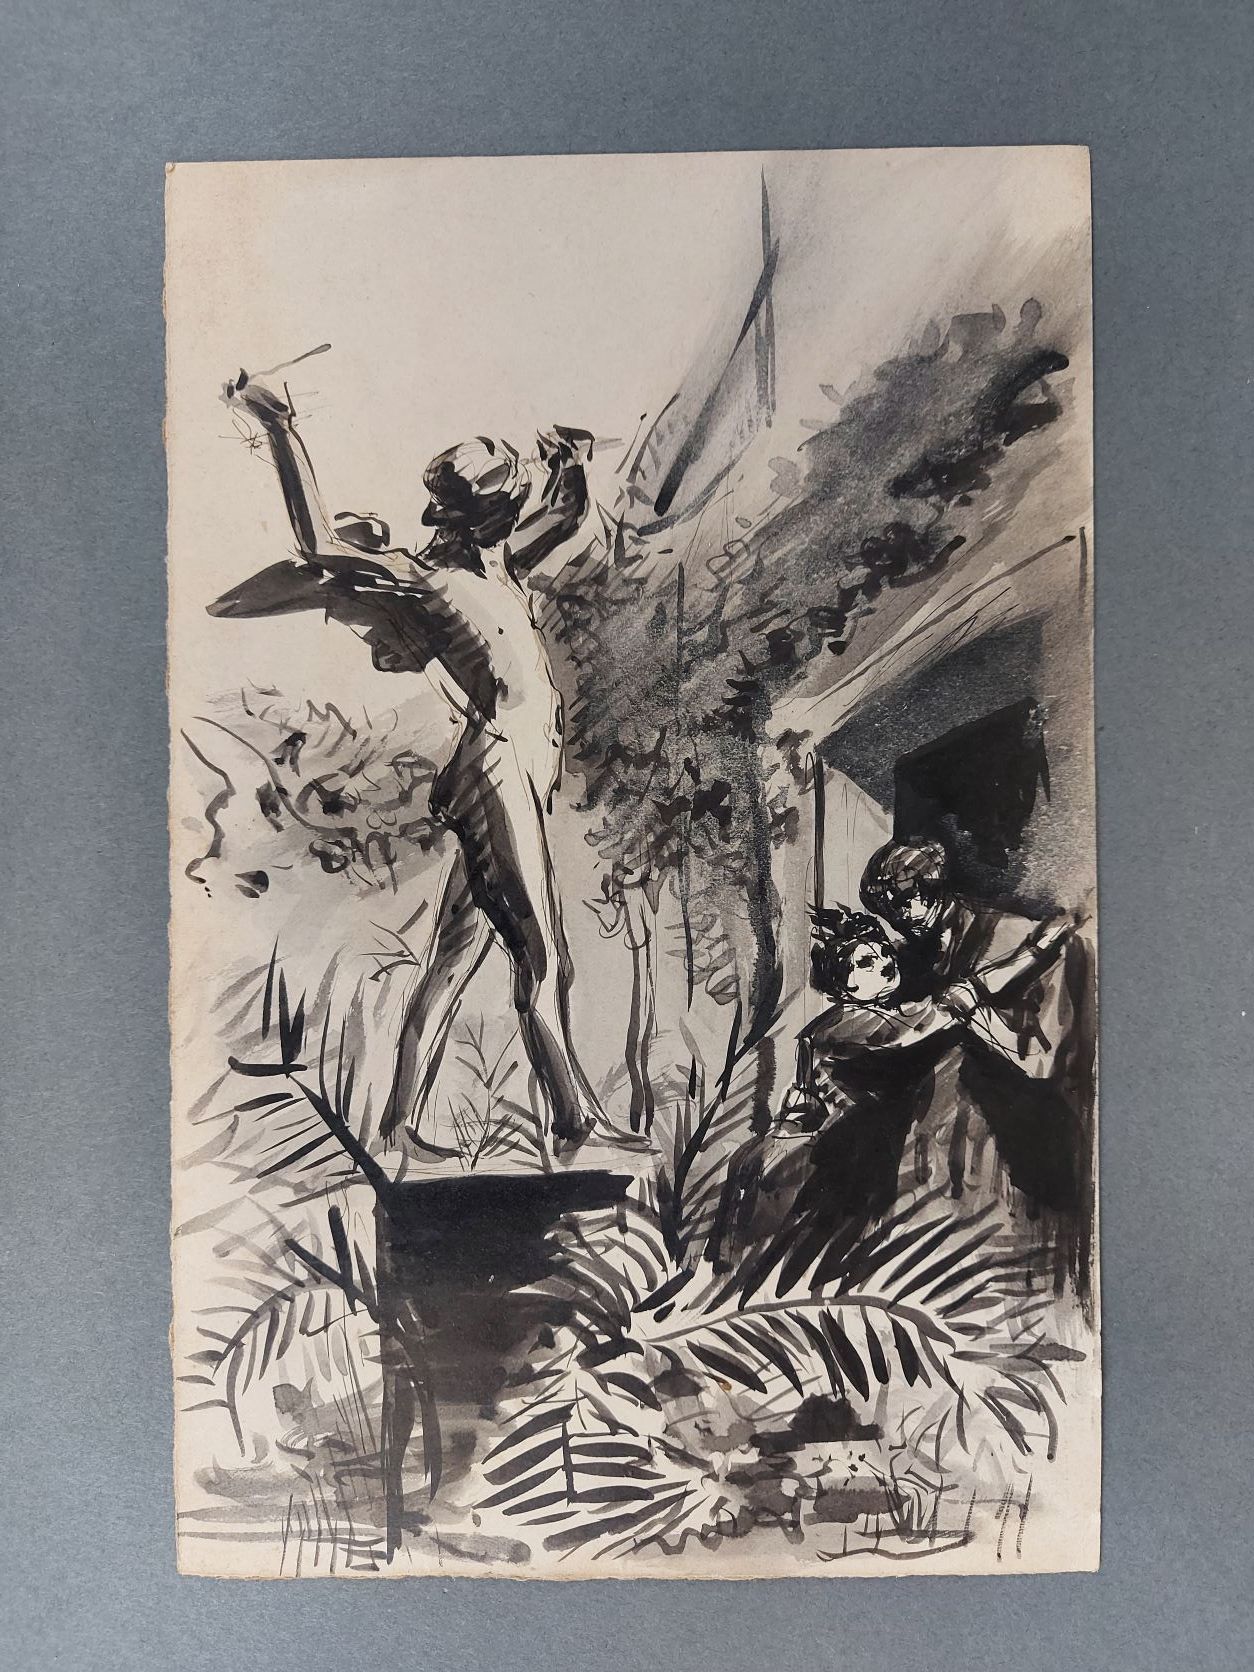 Null 
查尔斯-莫罗-沃特希尔 (1857-1924)

花园里的情侣

纸上黑墨水，背面有查尔斯-莫罗-沃特希尔遗产的印章

24 x 15.5厘米

未&hellip;